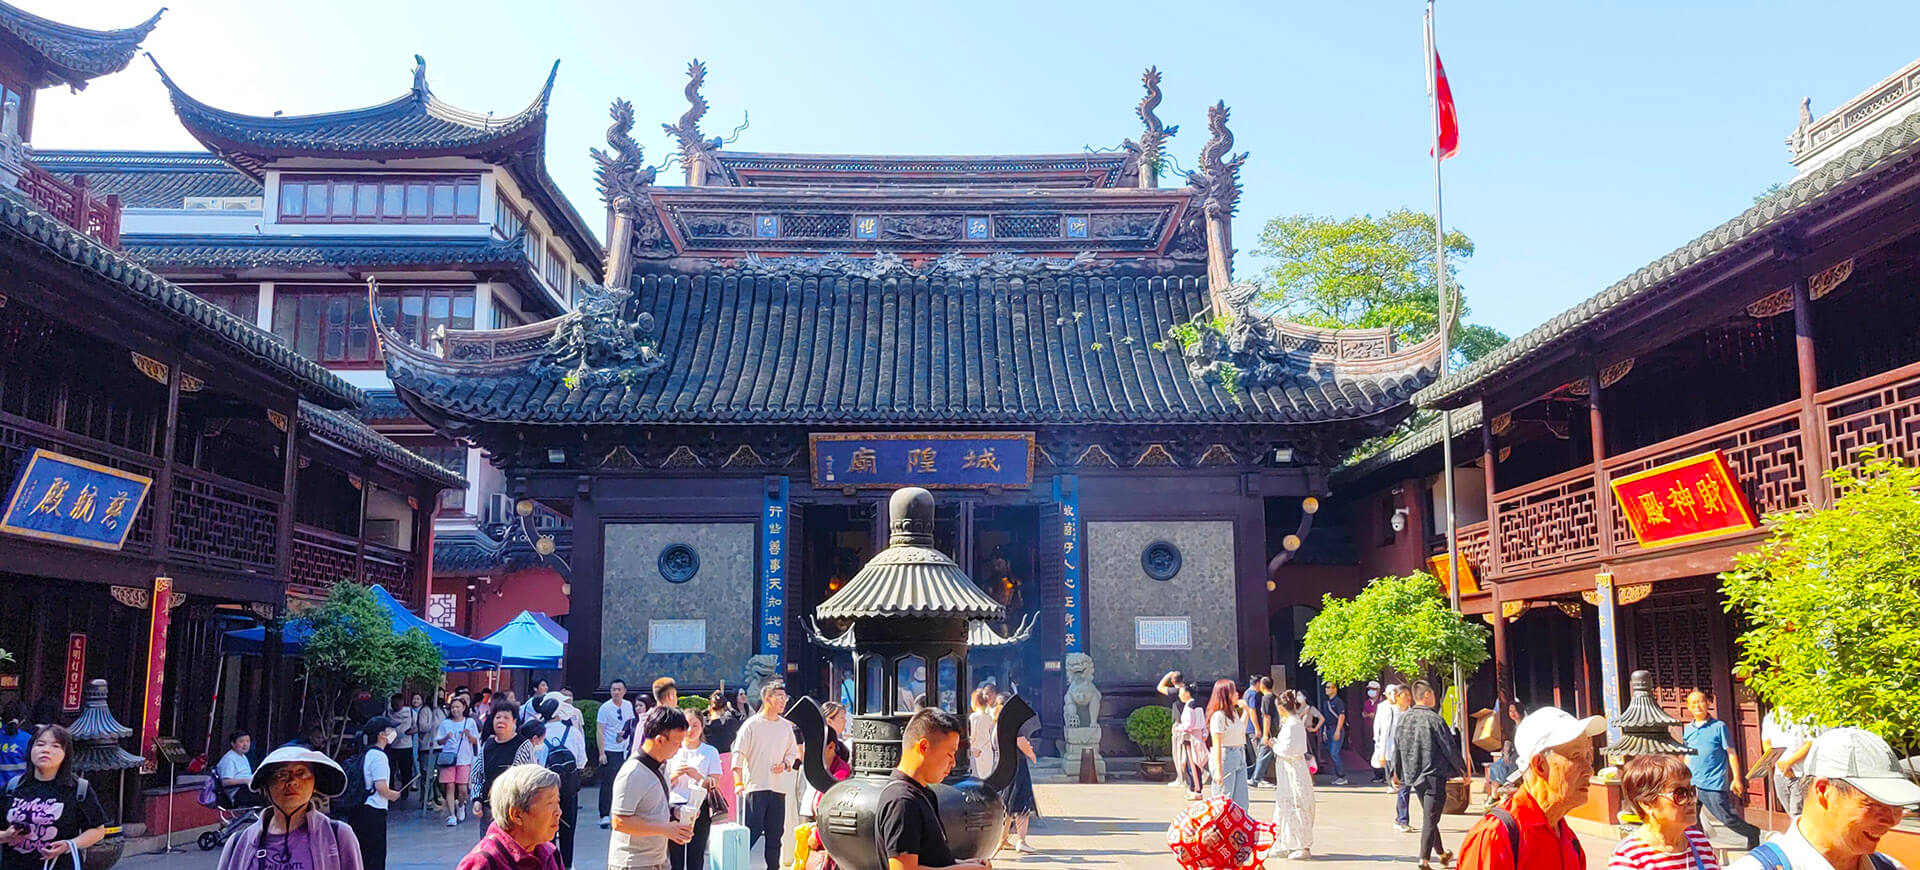 ShangHai City God Temple